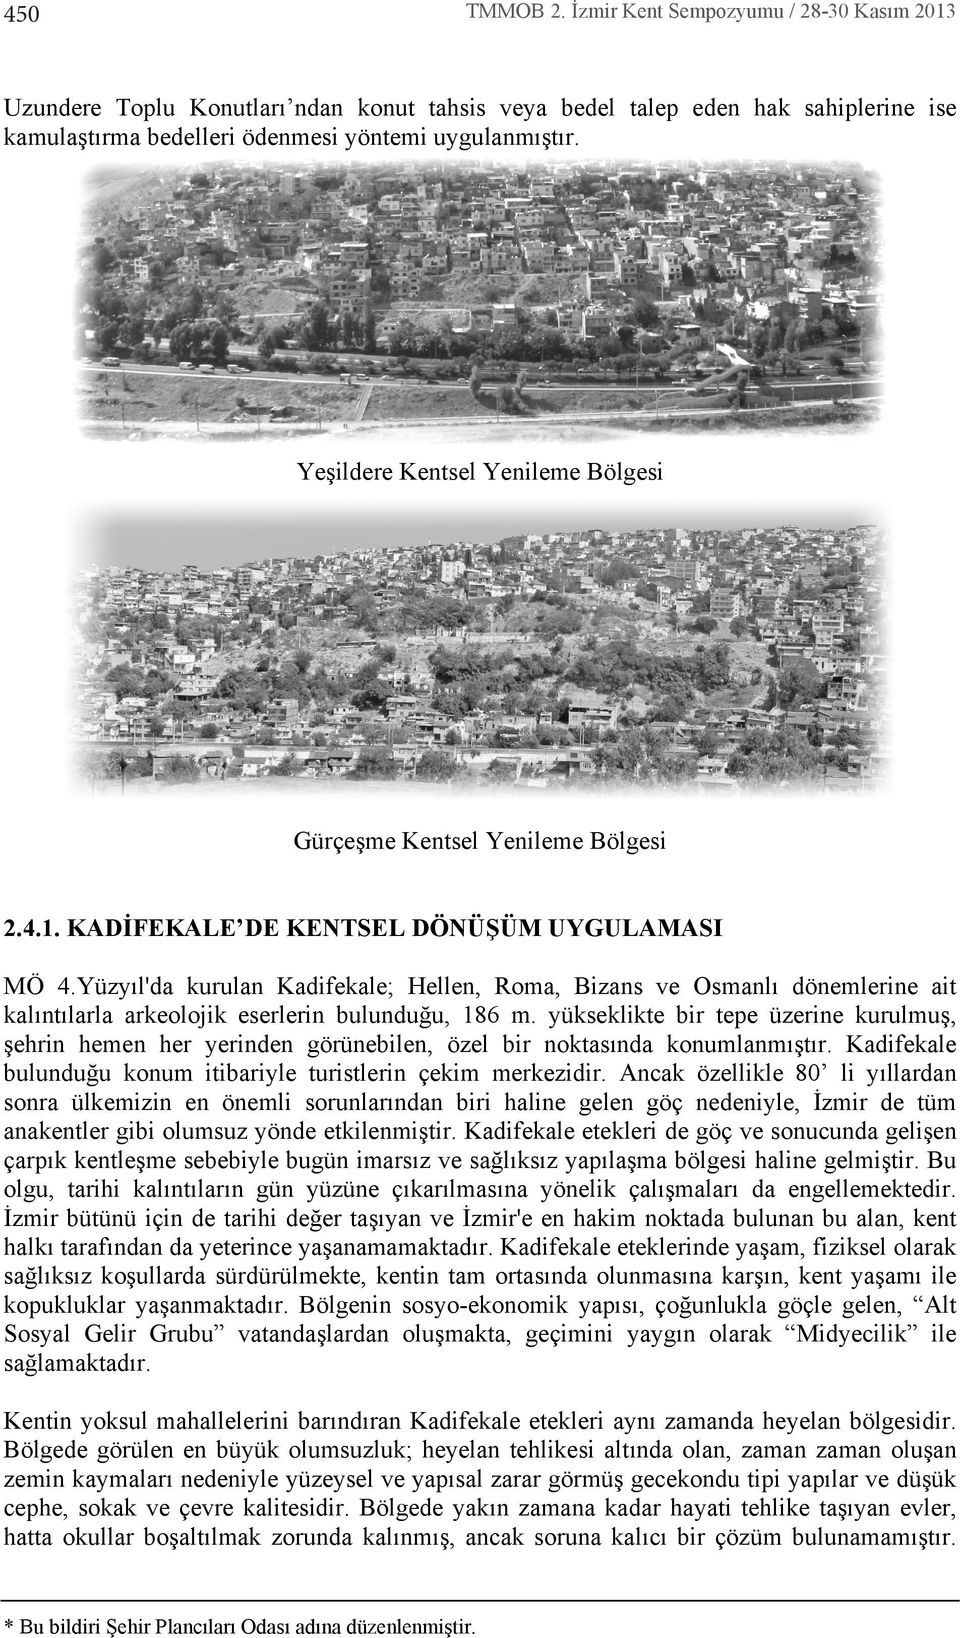 Yüzy l'da kurulan Kadifekale; Hellen, Roma, Bizans ve Osmanl dönemlerine ait kal nt larla arkeolojik eserlerin bulunduğu, 186 m.